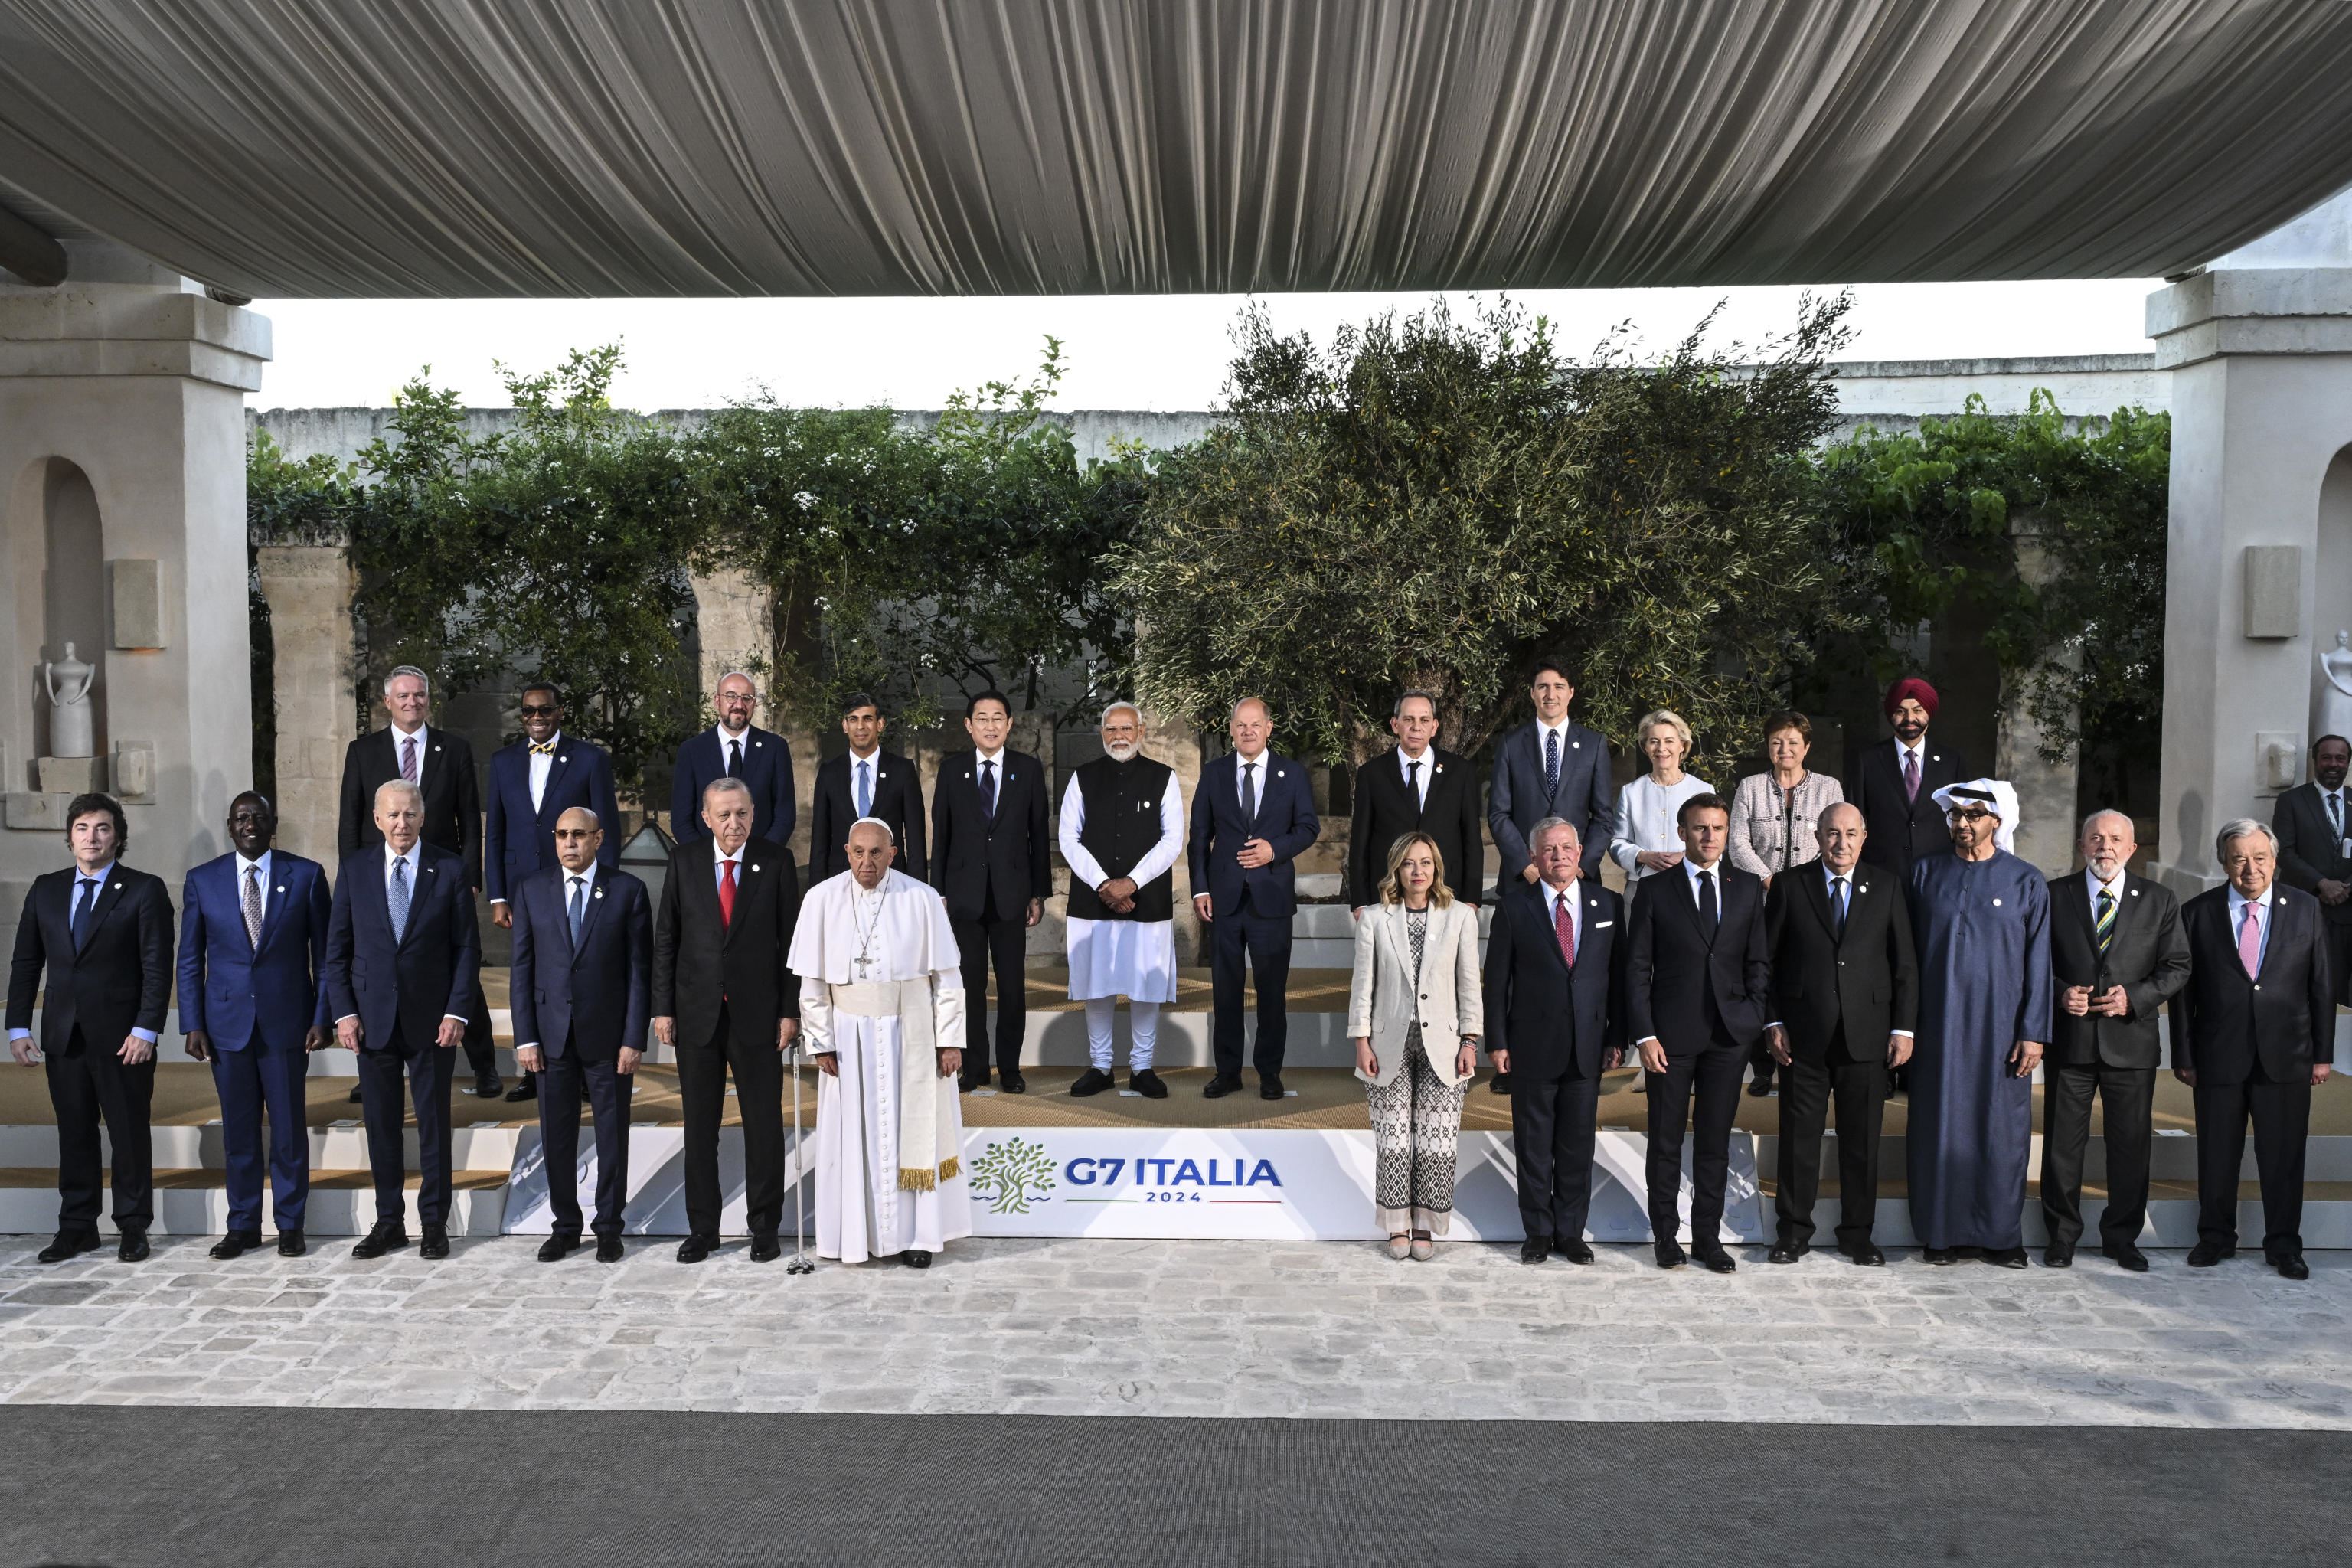 La foto storica del Papa con i grandi del mondo al G7, prima volta per un Pontefice